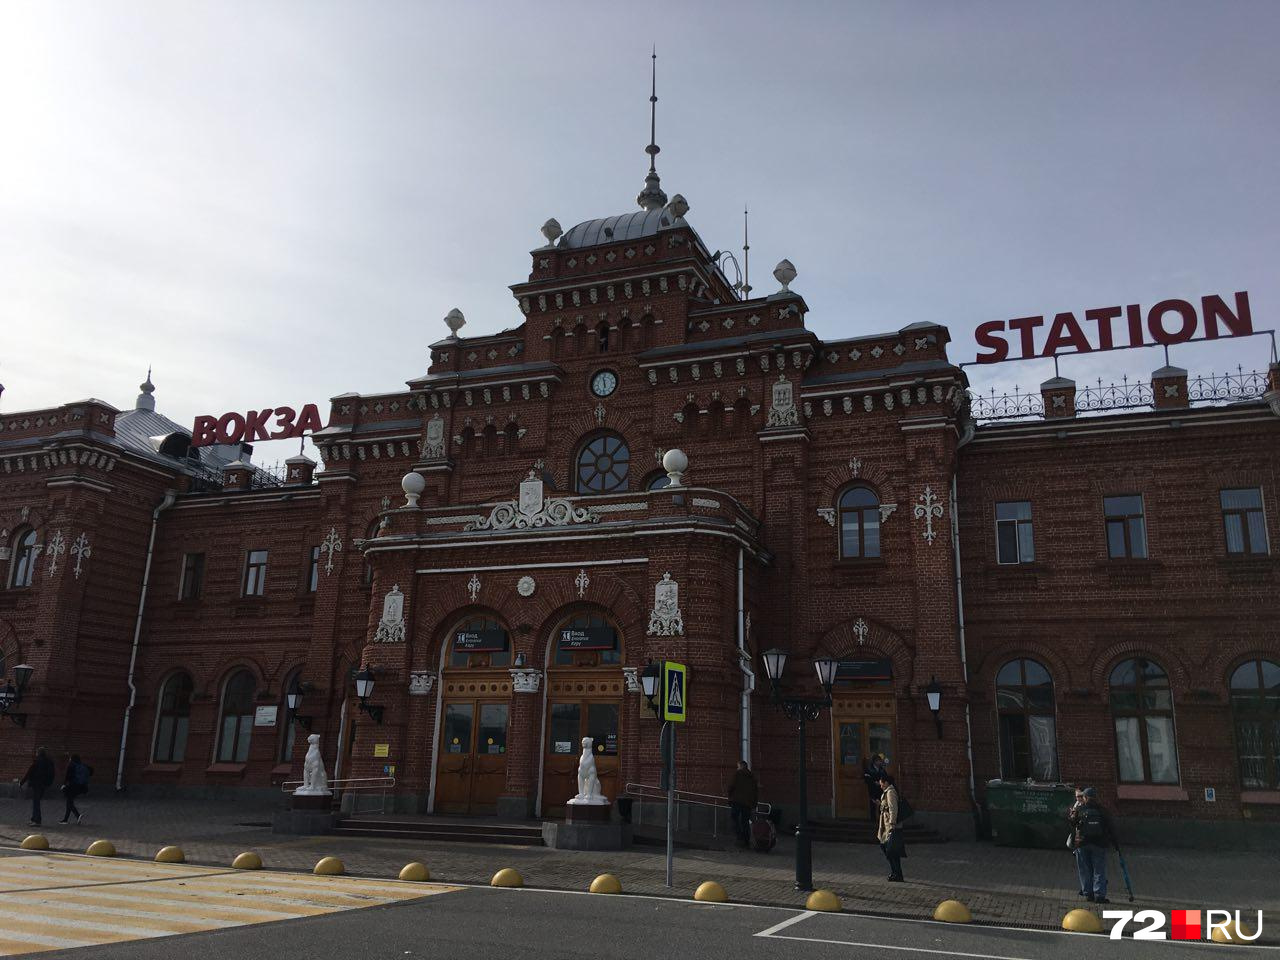 Старый вокзал Казани. Сразу понимаешь, что попал в город с историей